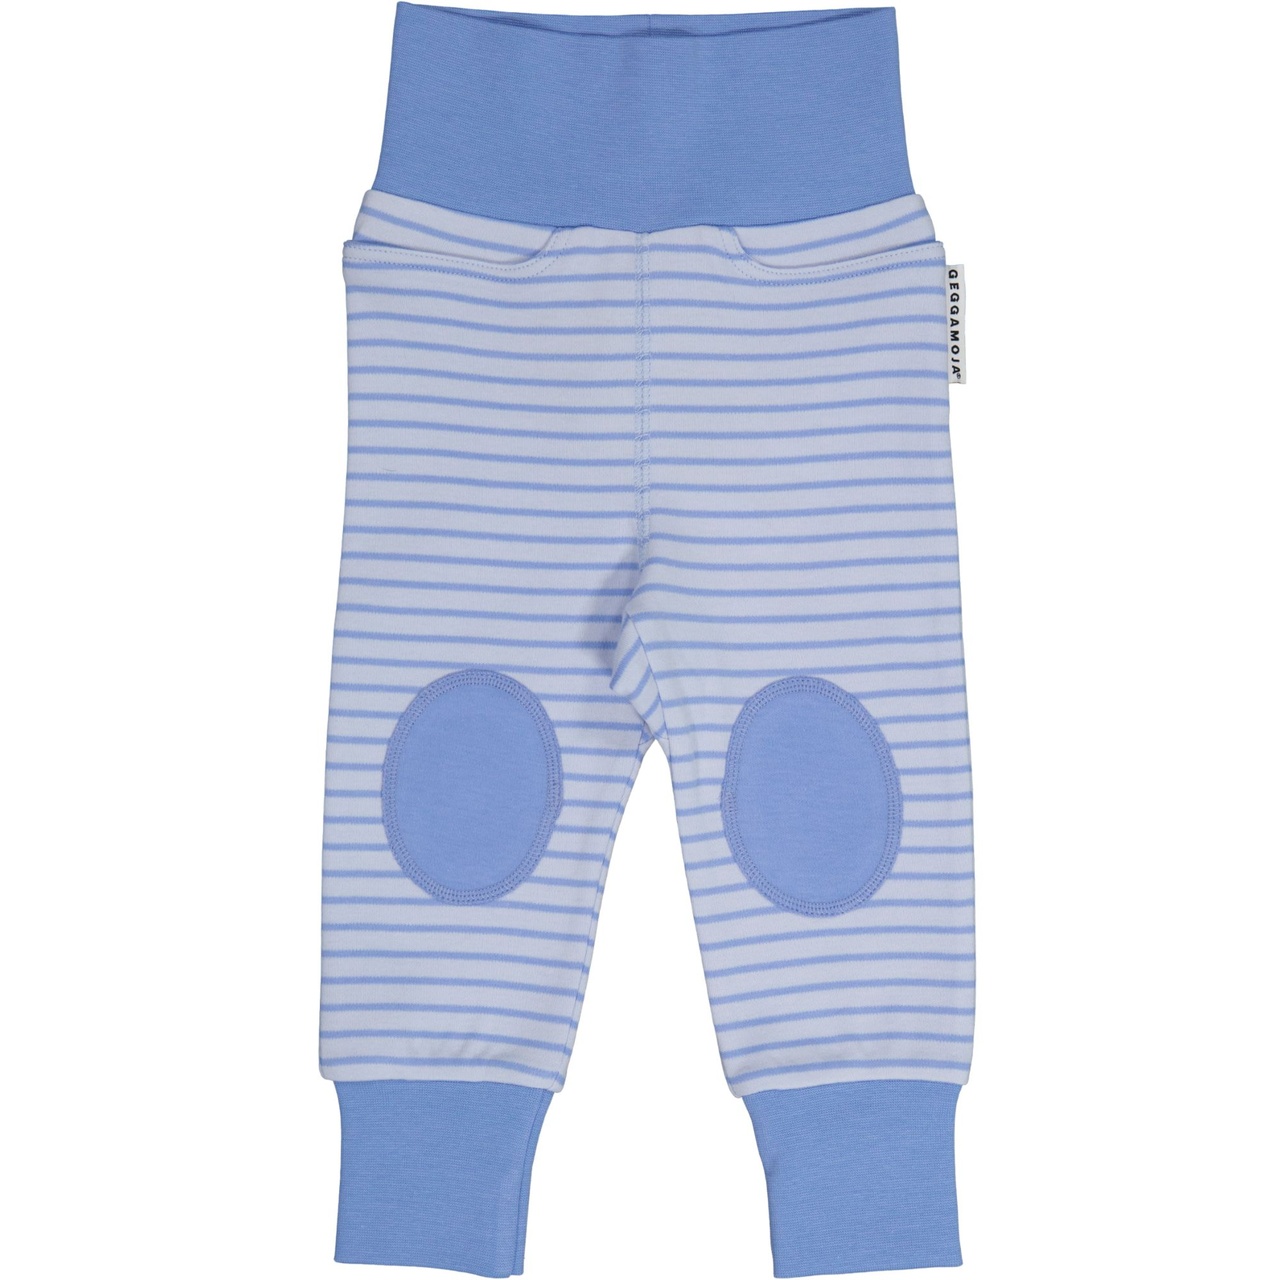 Vauvan housut Light Sininen/Sininen  62/68